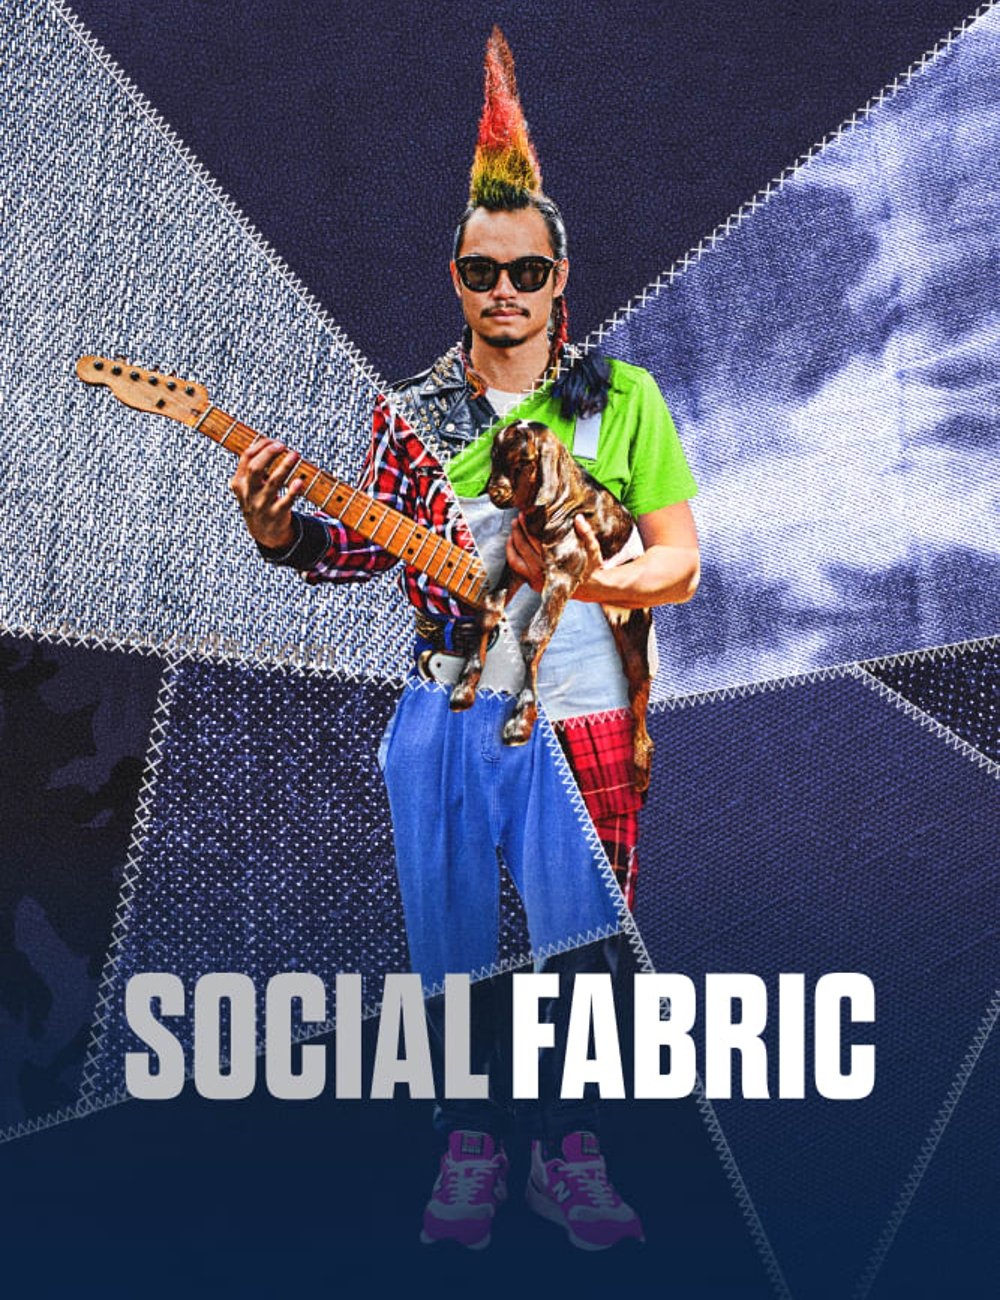 Social Fabric - documentário  - dia internacional da moda - documentário de moda - Red Bull TV - https://stealthelook.com.br